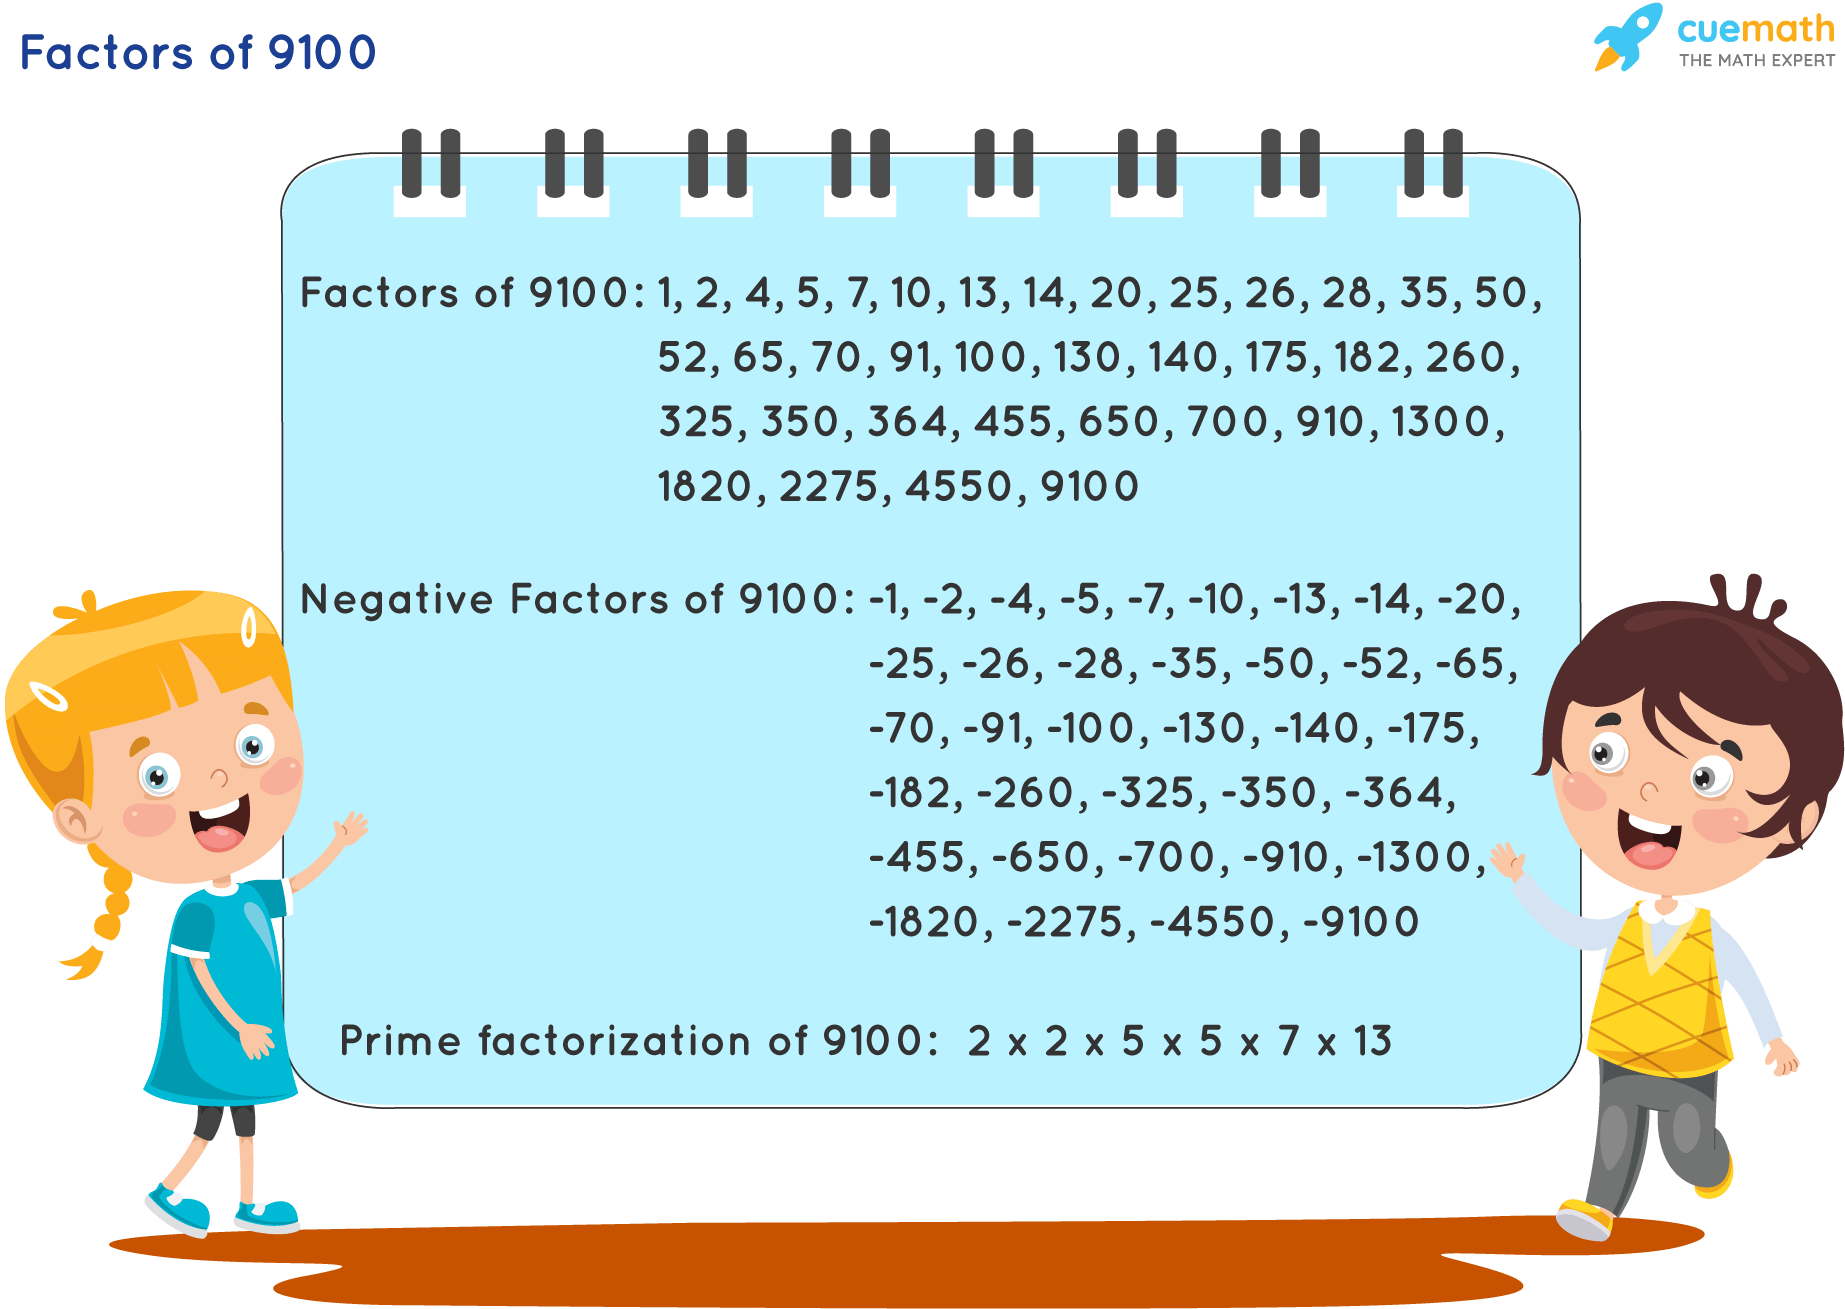 Factors of 9100